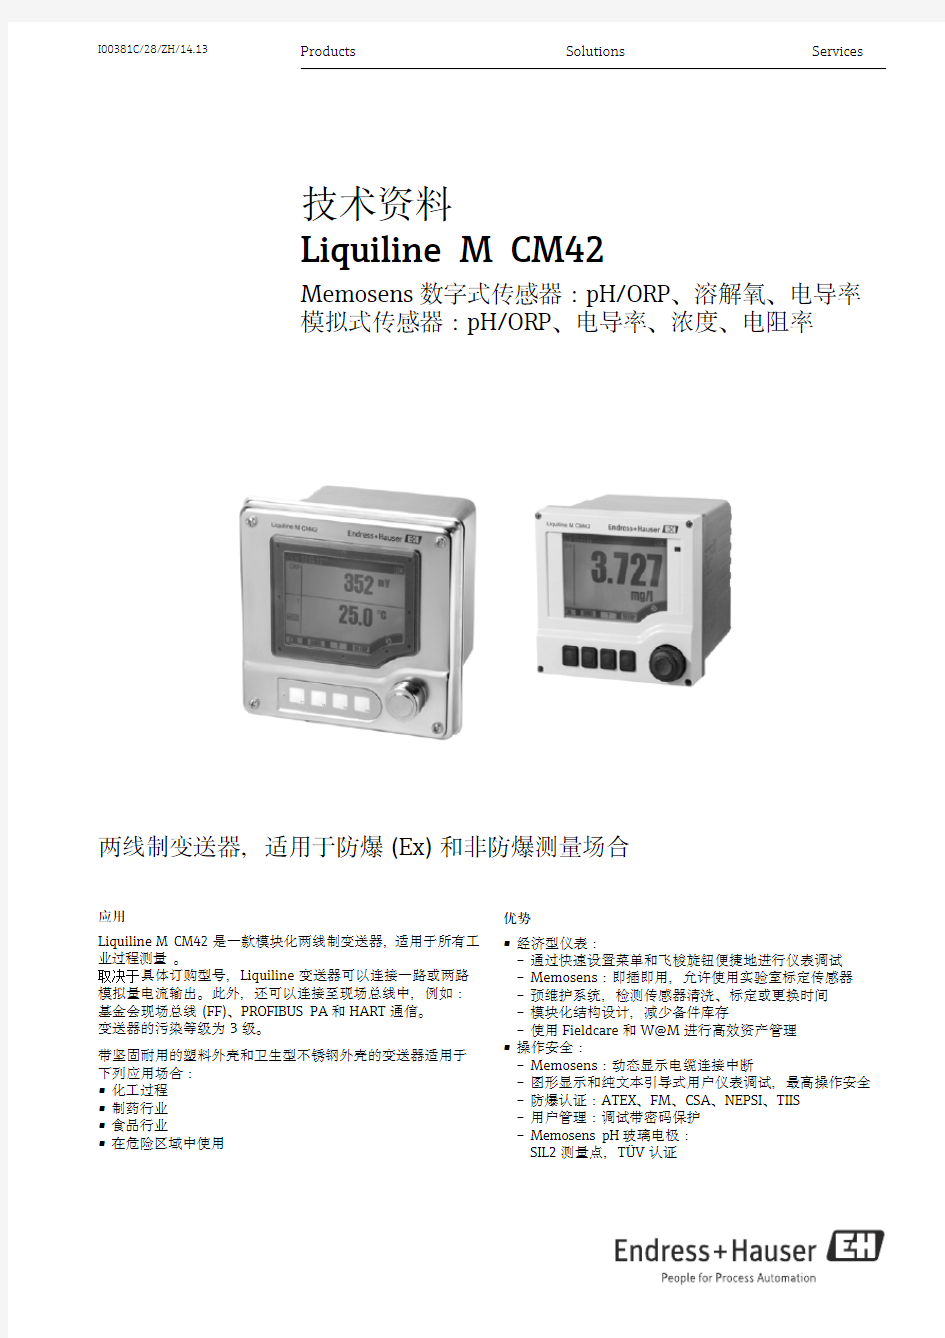 E+H Memosens 数字式传感器 (Endress+Hauser) 技术资料 Liquiline M CM42